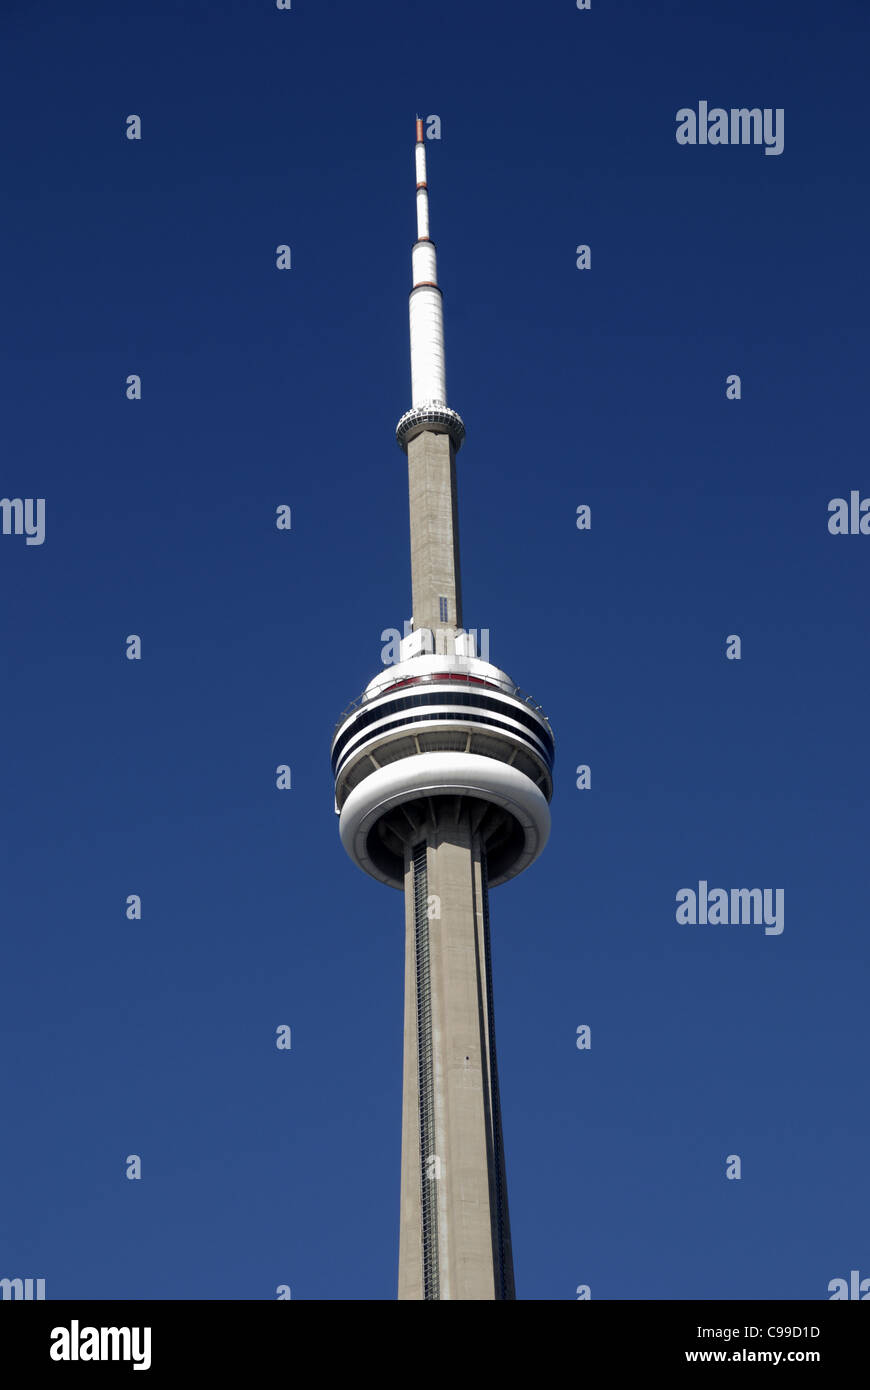 In piedi a 1815.4 metri di altezza la CN Tower a Toronto in Canada è il più alto libera struttura permanente nell'emisfero occidentale. Foto Stock